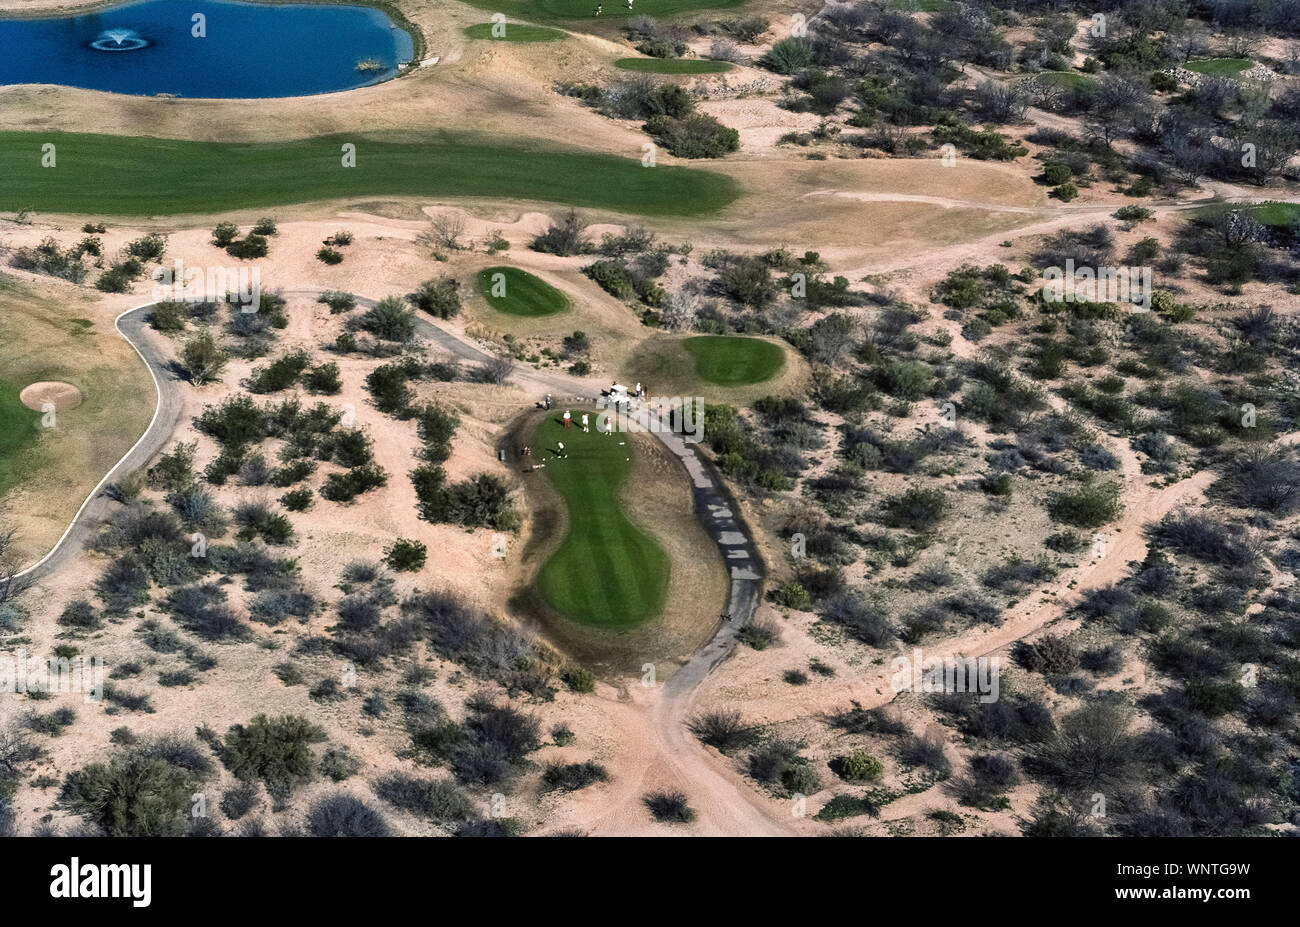 Des parcelles d'herbe verte et tees fairway et un réservoir d'eau bleu ajouter de la couleur à la photographie aérienne d'un terrain de golf créé dans le désert de Sonoran dure près de Tucson, Arizona, USA. Il y a plus de 40 terrains de golf dans les 40 à 70 milles (64 kilomètres) à113 du centre de cette ville. Le premier cours de Tucson a ouvert en 1925 et est maintenant partie du complexe de golf de Randolph qui comprend deux parcours de 18 trous. Banque D'Images